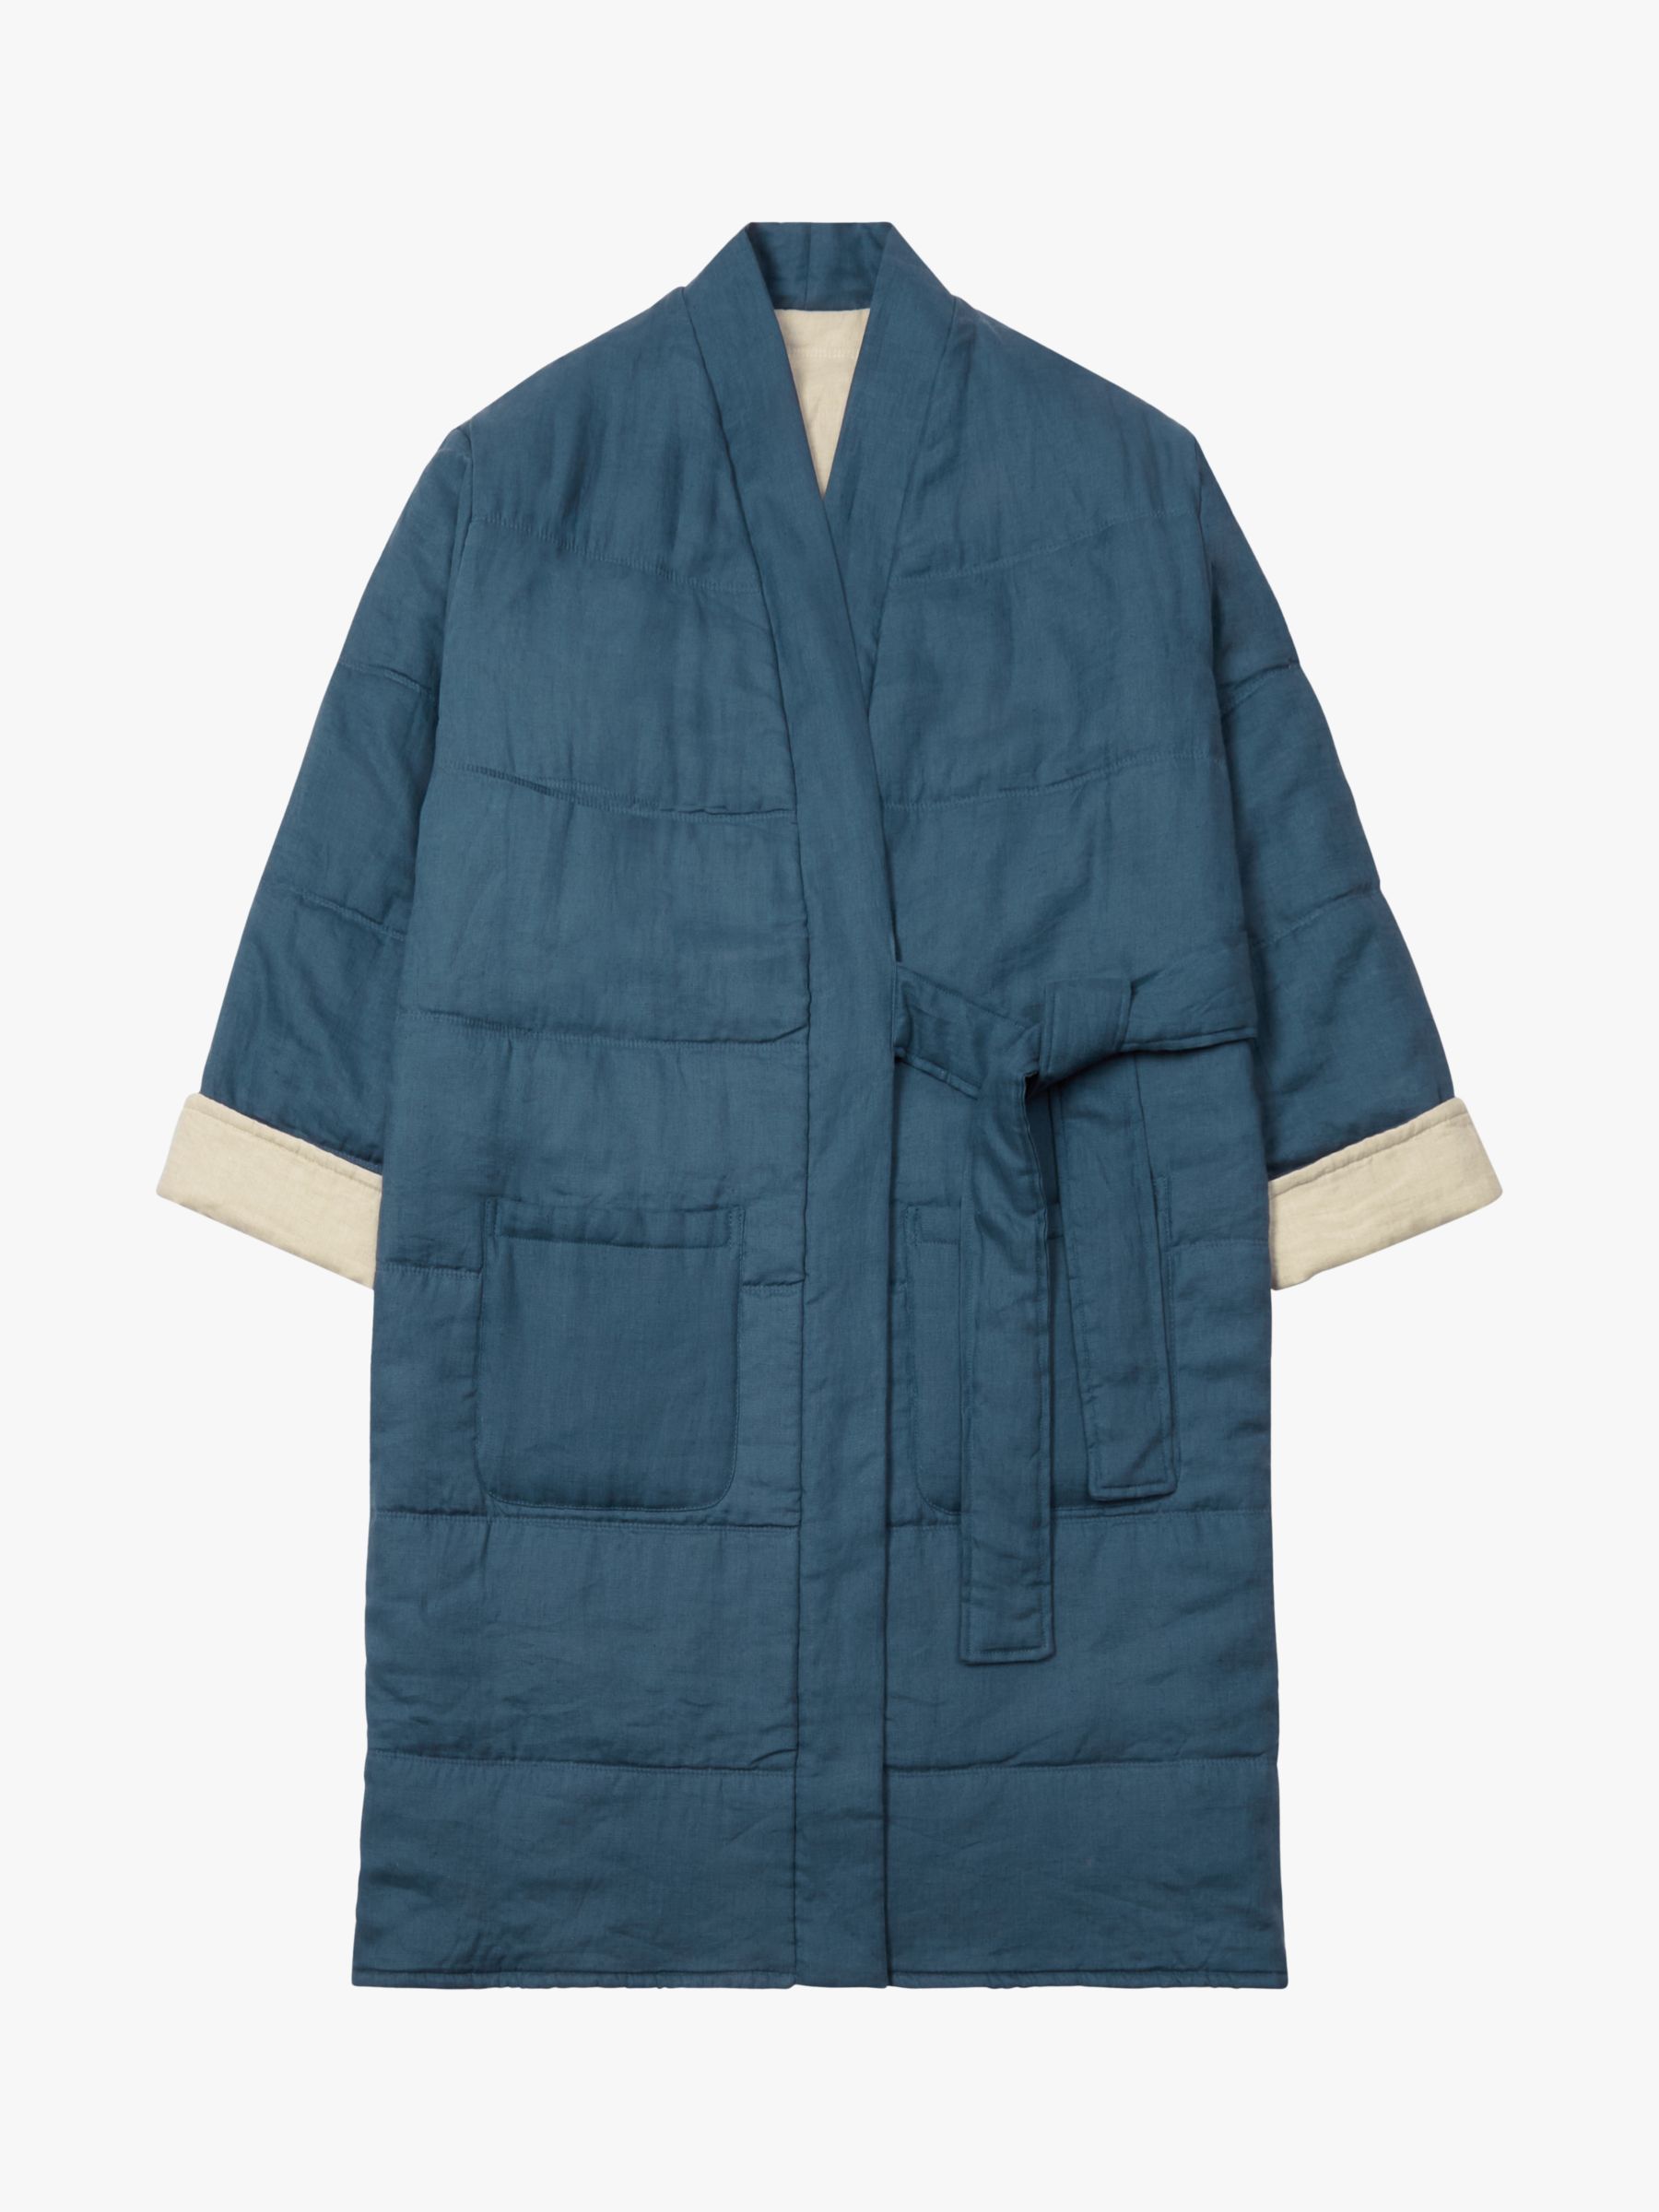 Buy Piglet in Bed Linen Oversized Housecoat Online at johnlewis.com